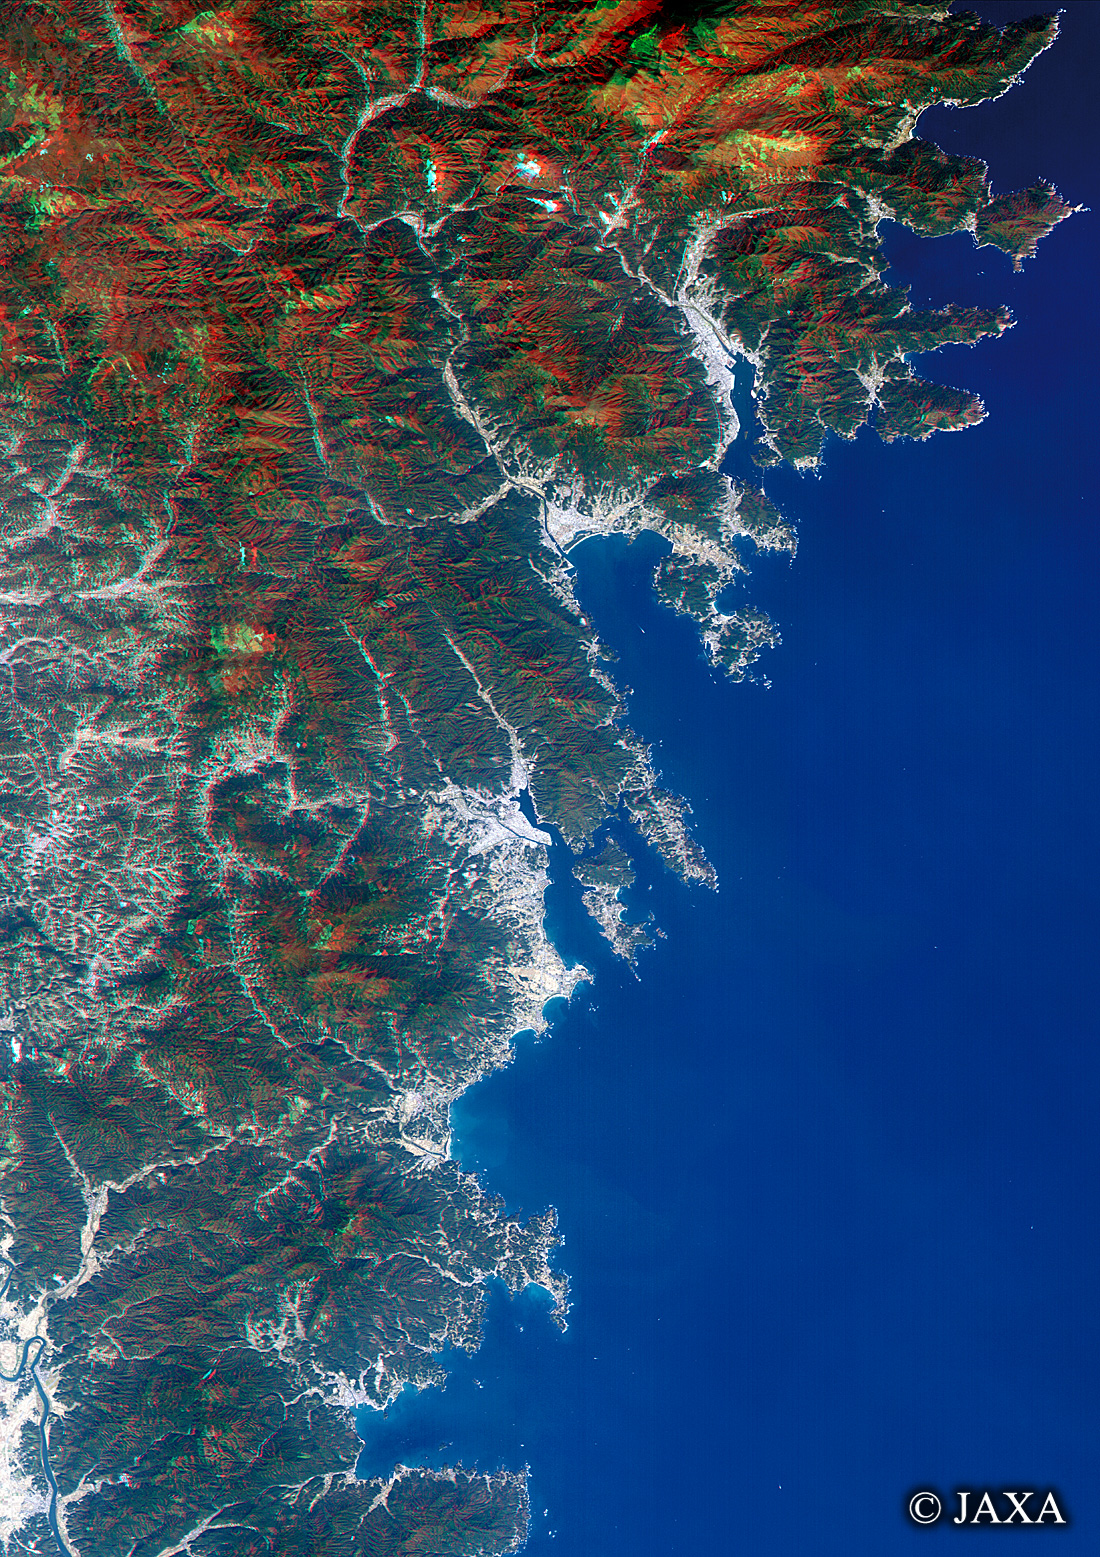 だいちから見た日本の都市 気仙沼市周辺立体視画像:衛星画像